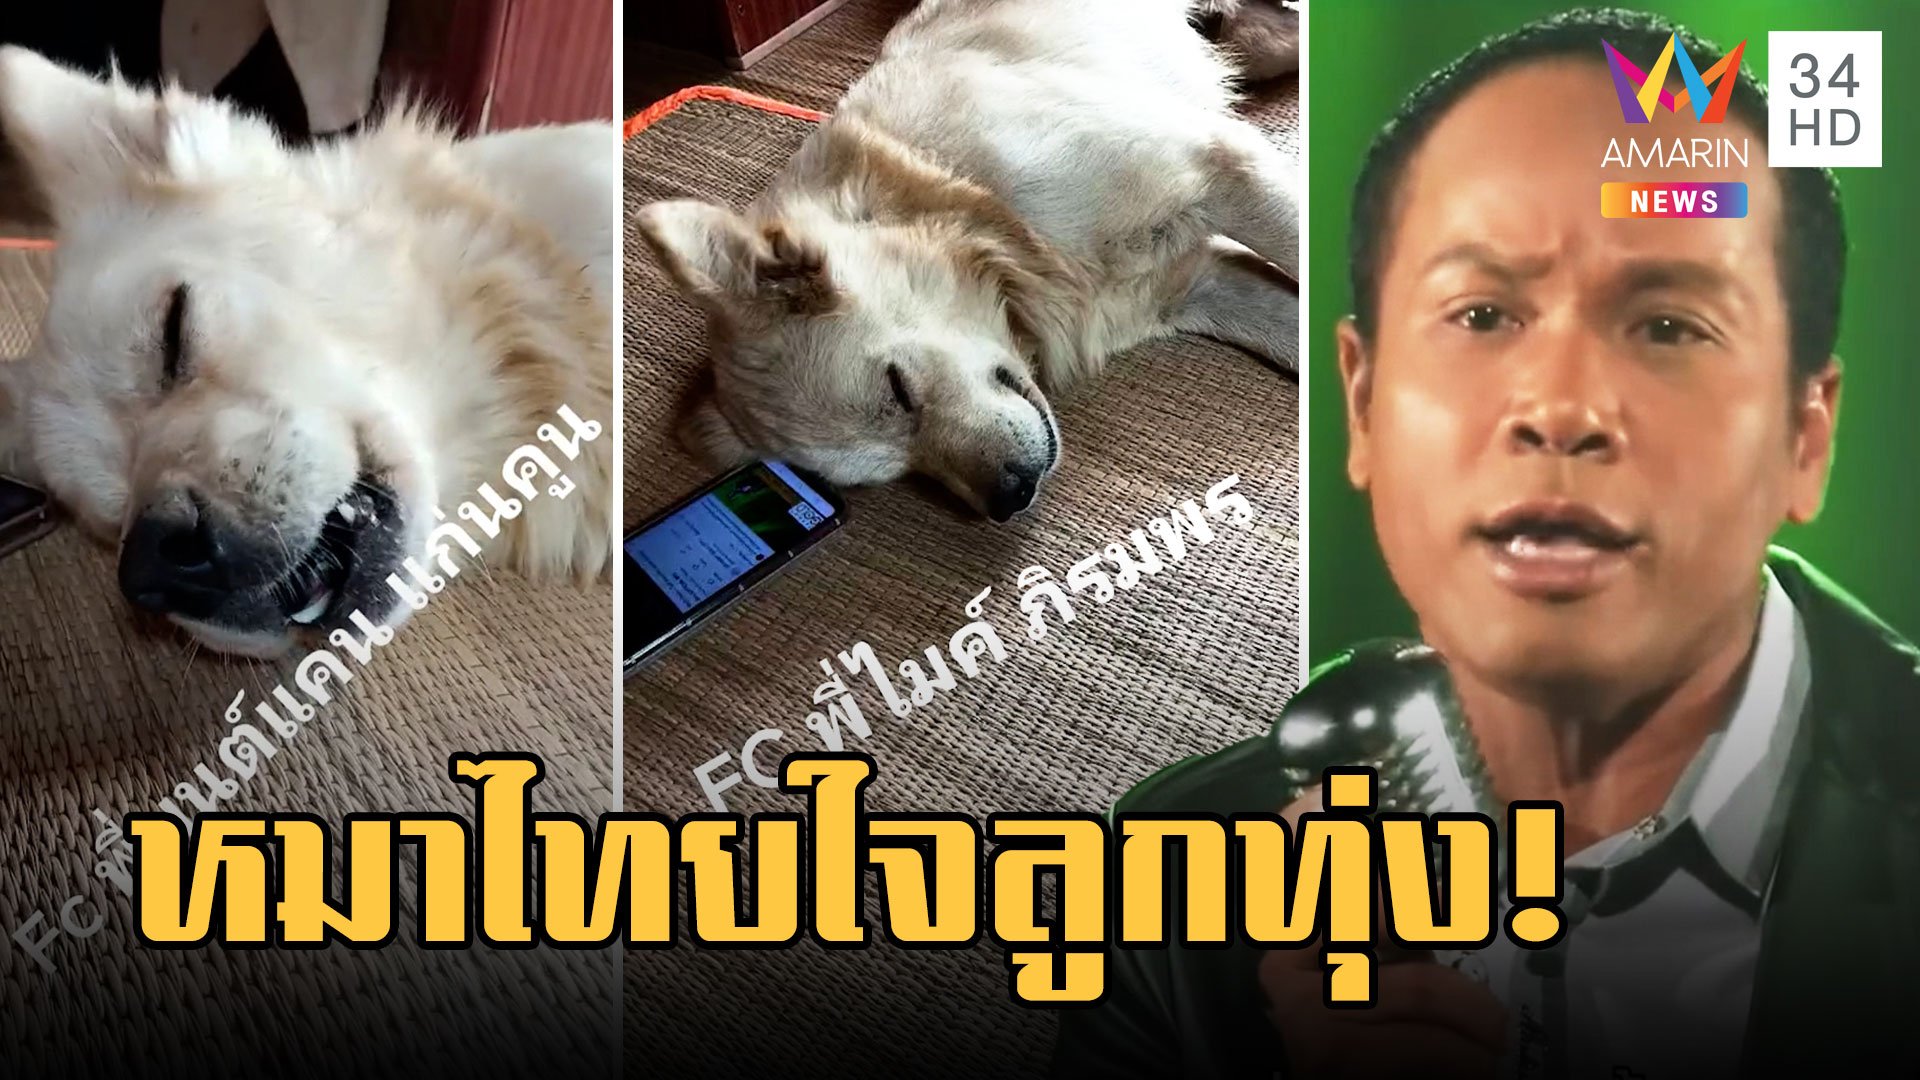 ไข่เค็มหมาไทยใจลูกทุ่ง ร้องเพลง "ไมค์ ภิรมย์พร - มนต์แคน" | ข่าวอรุณอมรินทร์ | 13 มี.ค. 66 | AMARIN TVHD34